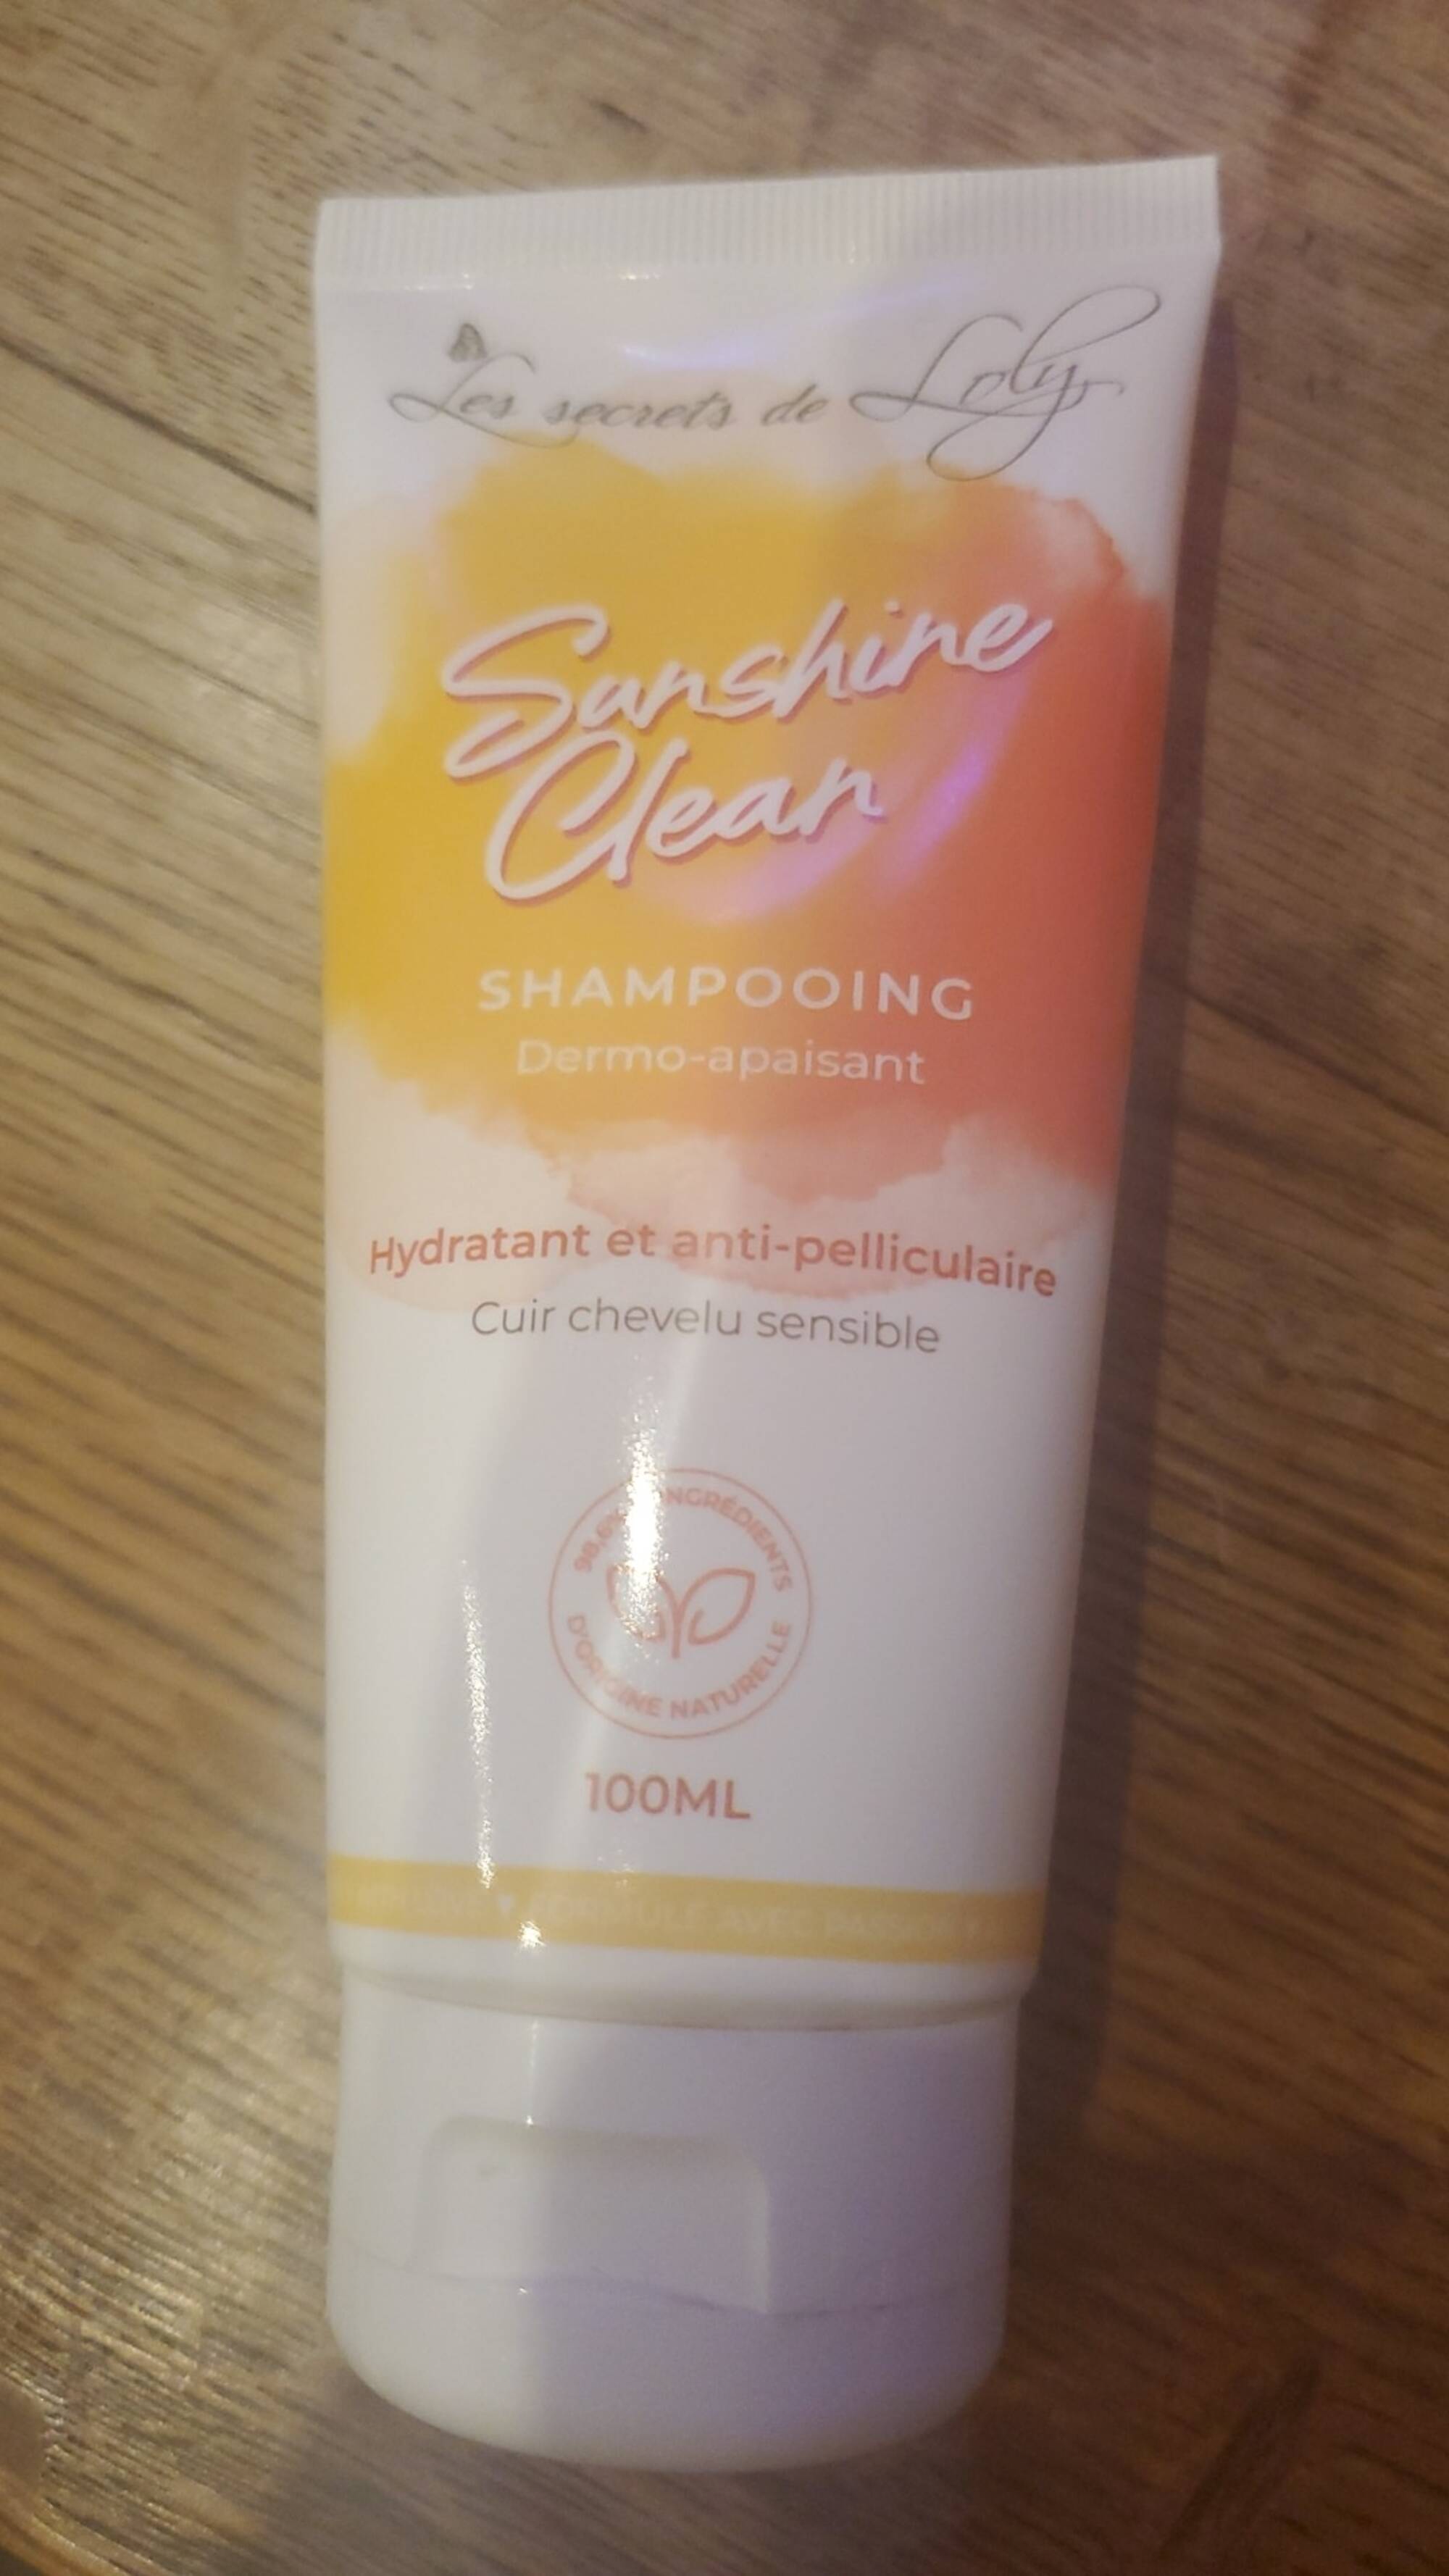 LES SECRETS DE LOLY - Sunchine clean_shampooing dermo-apaisant